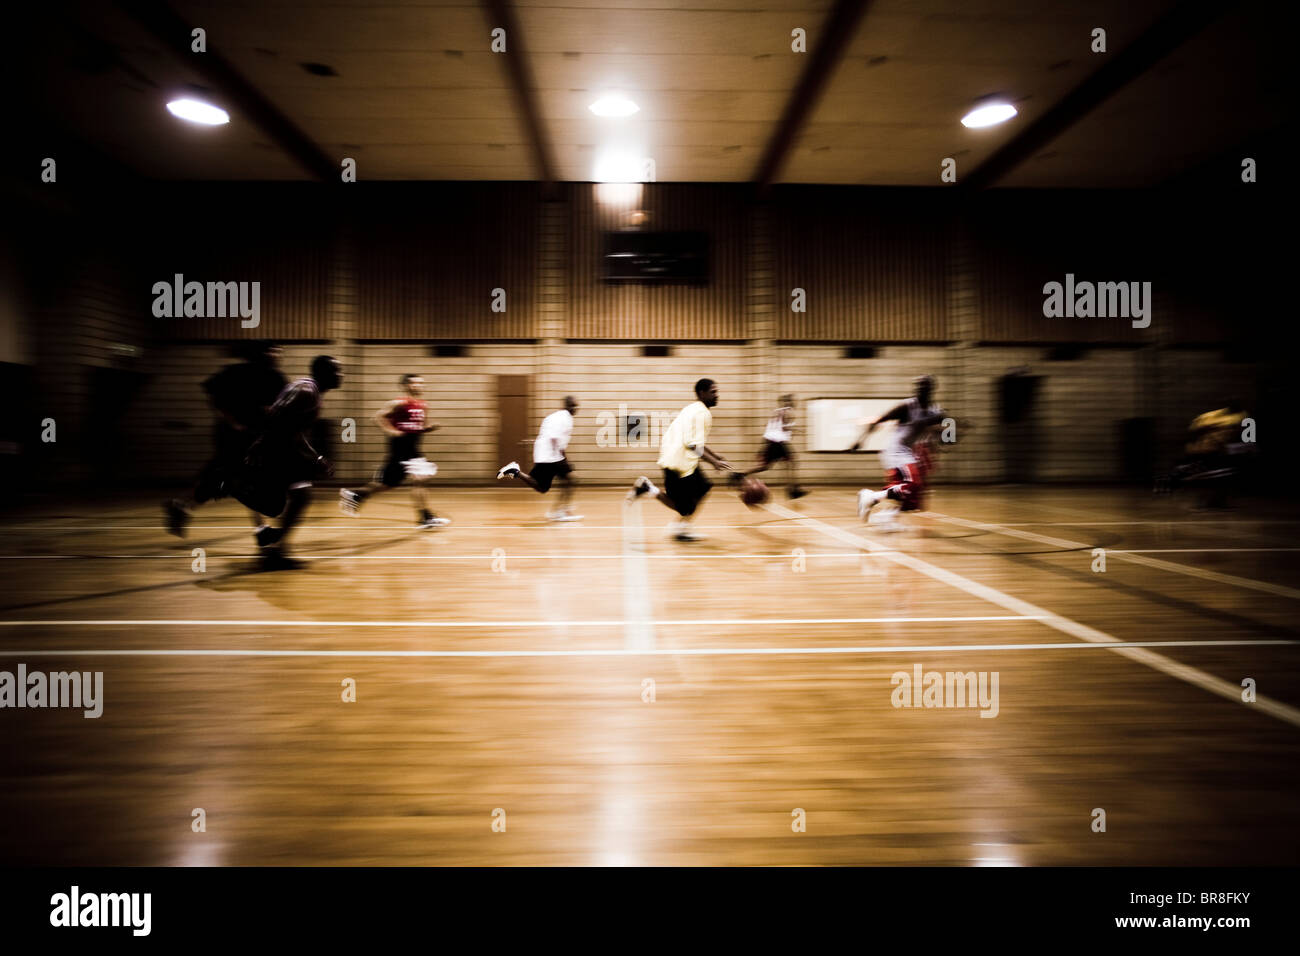 Gruppe von Jungs in einer innerstädtischen Turnhalle Basketball zu spielen. Stockfoto